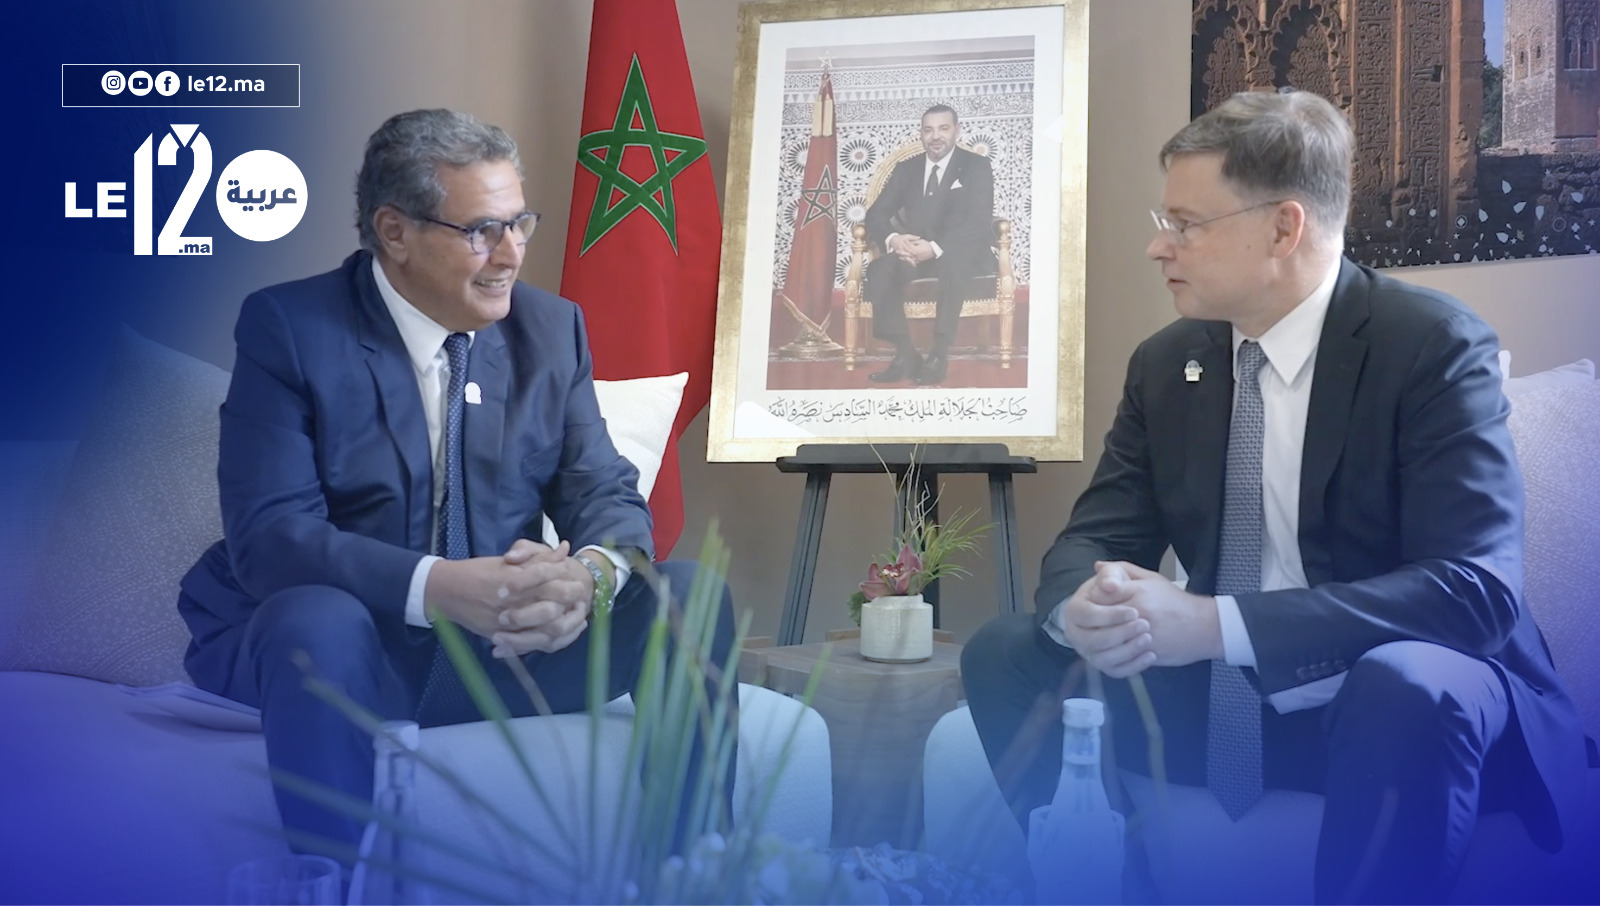 فالديس: نشكر المغرب على التنظيم ونهنئه على إحتضان كأس العالم (شاهد التصريح)